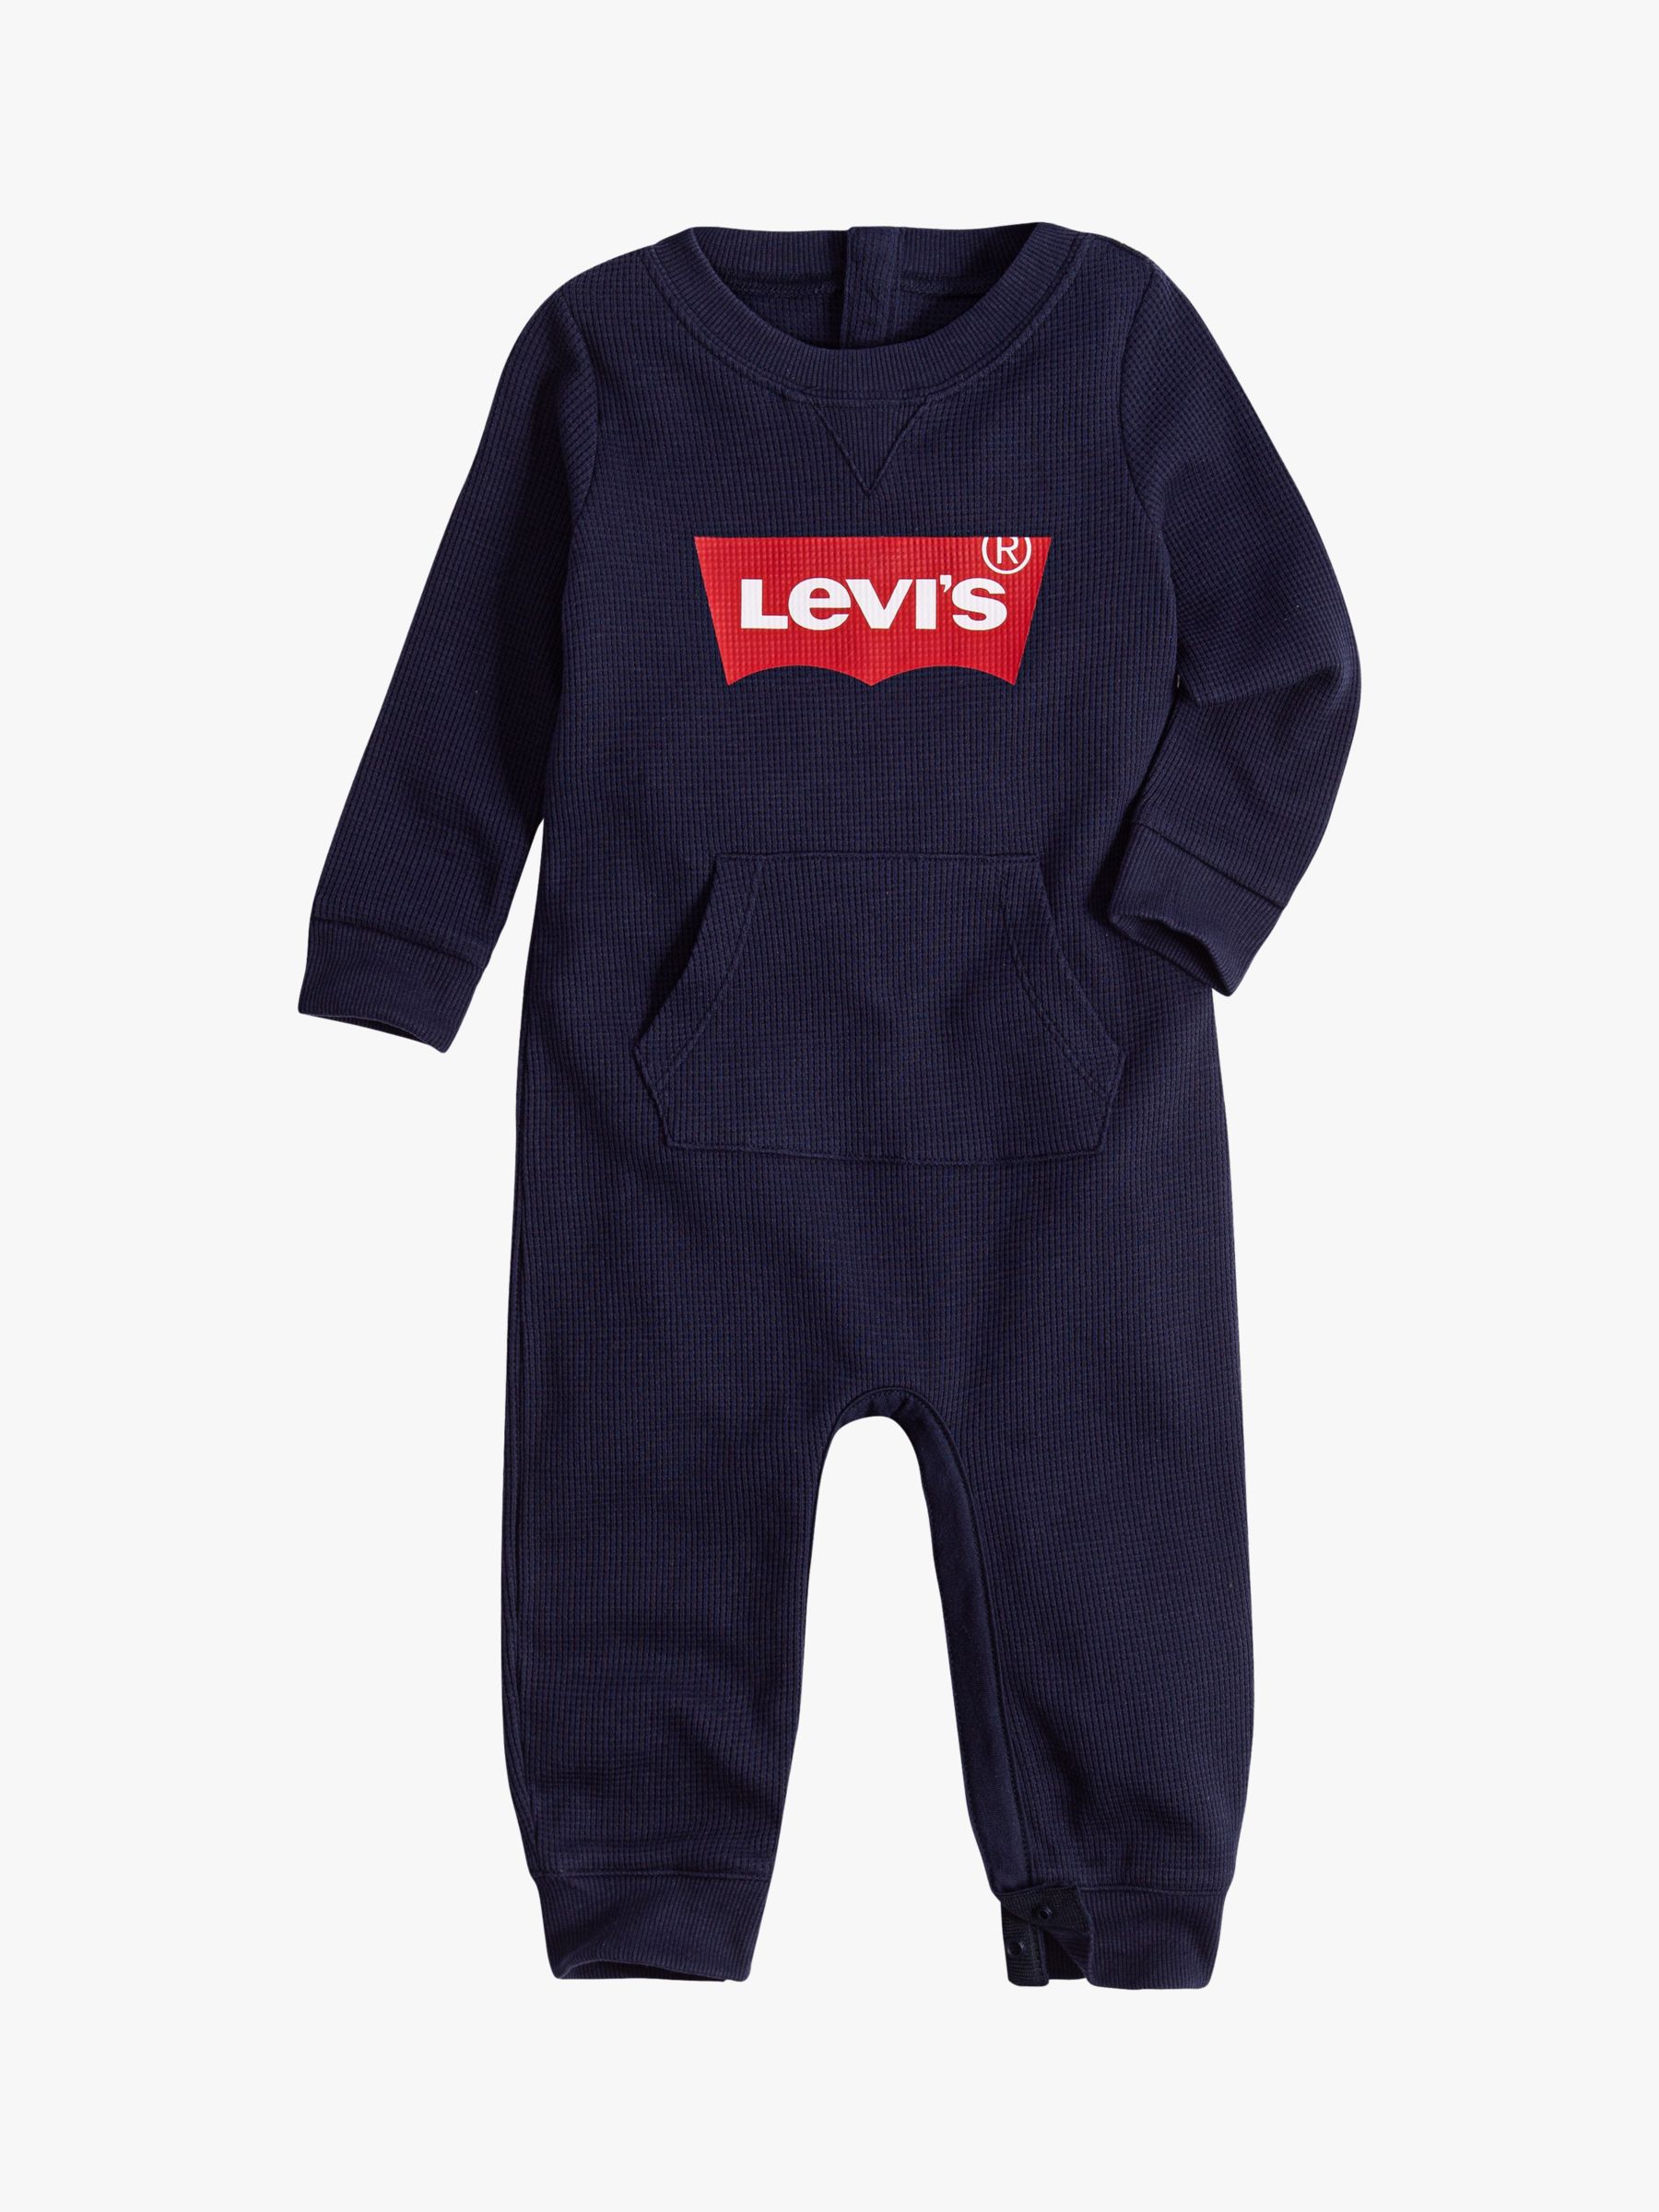 levi's baby overalls